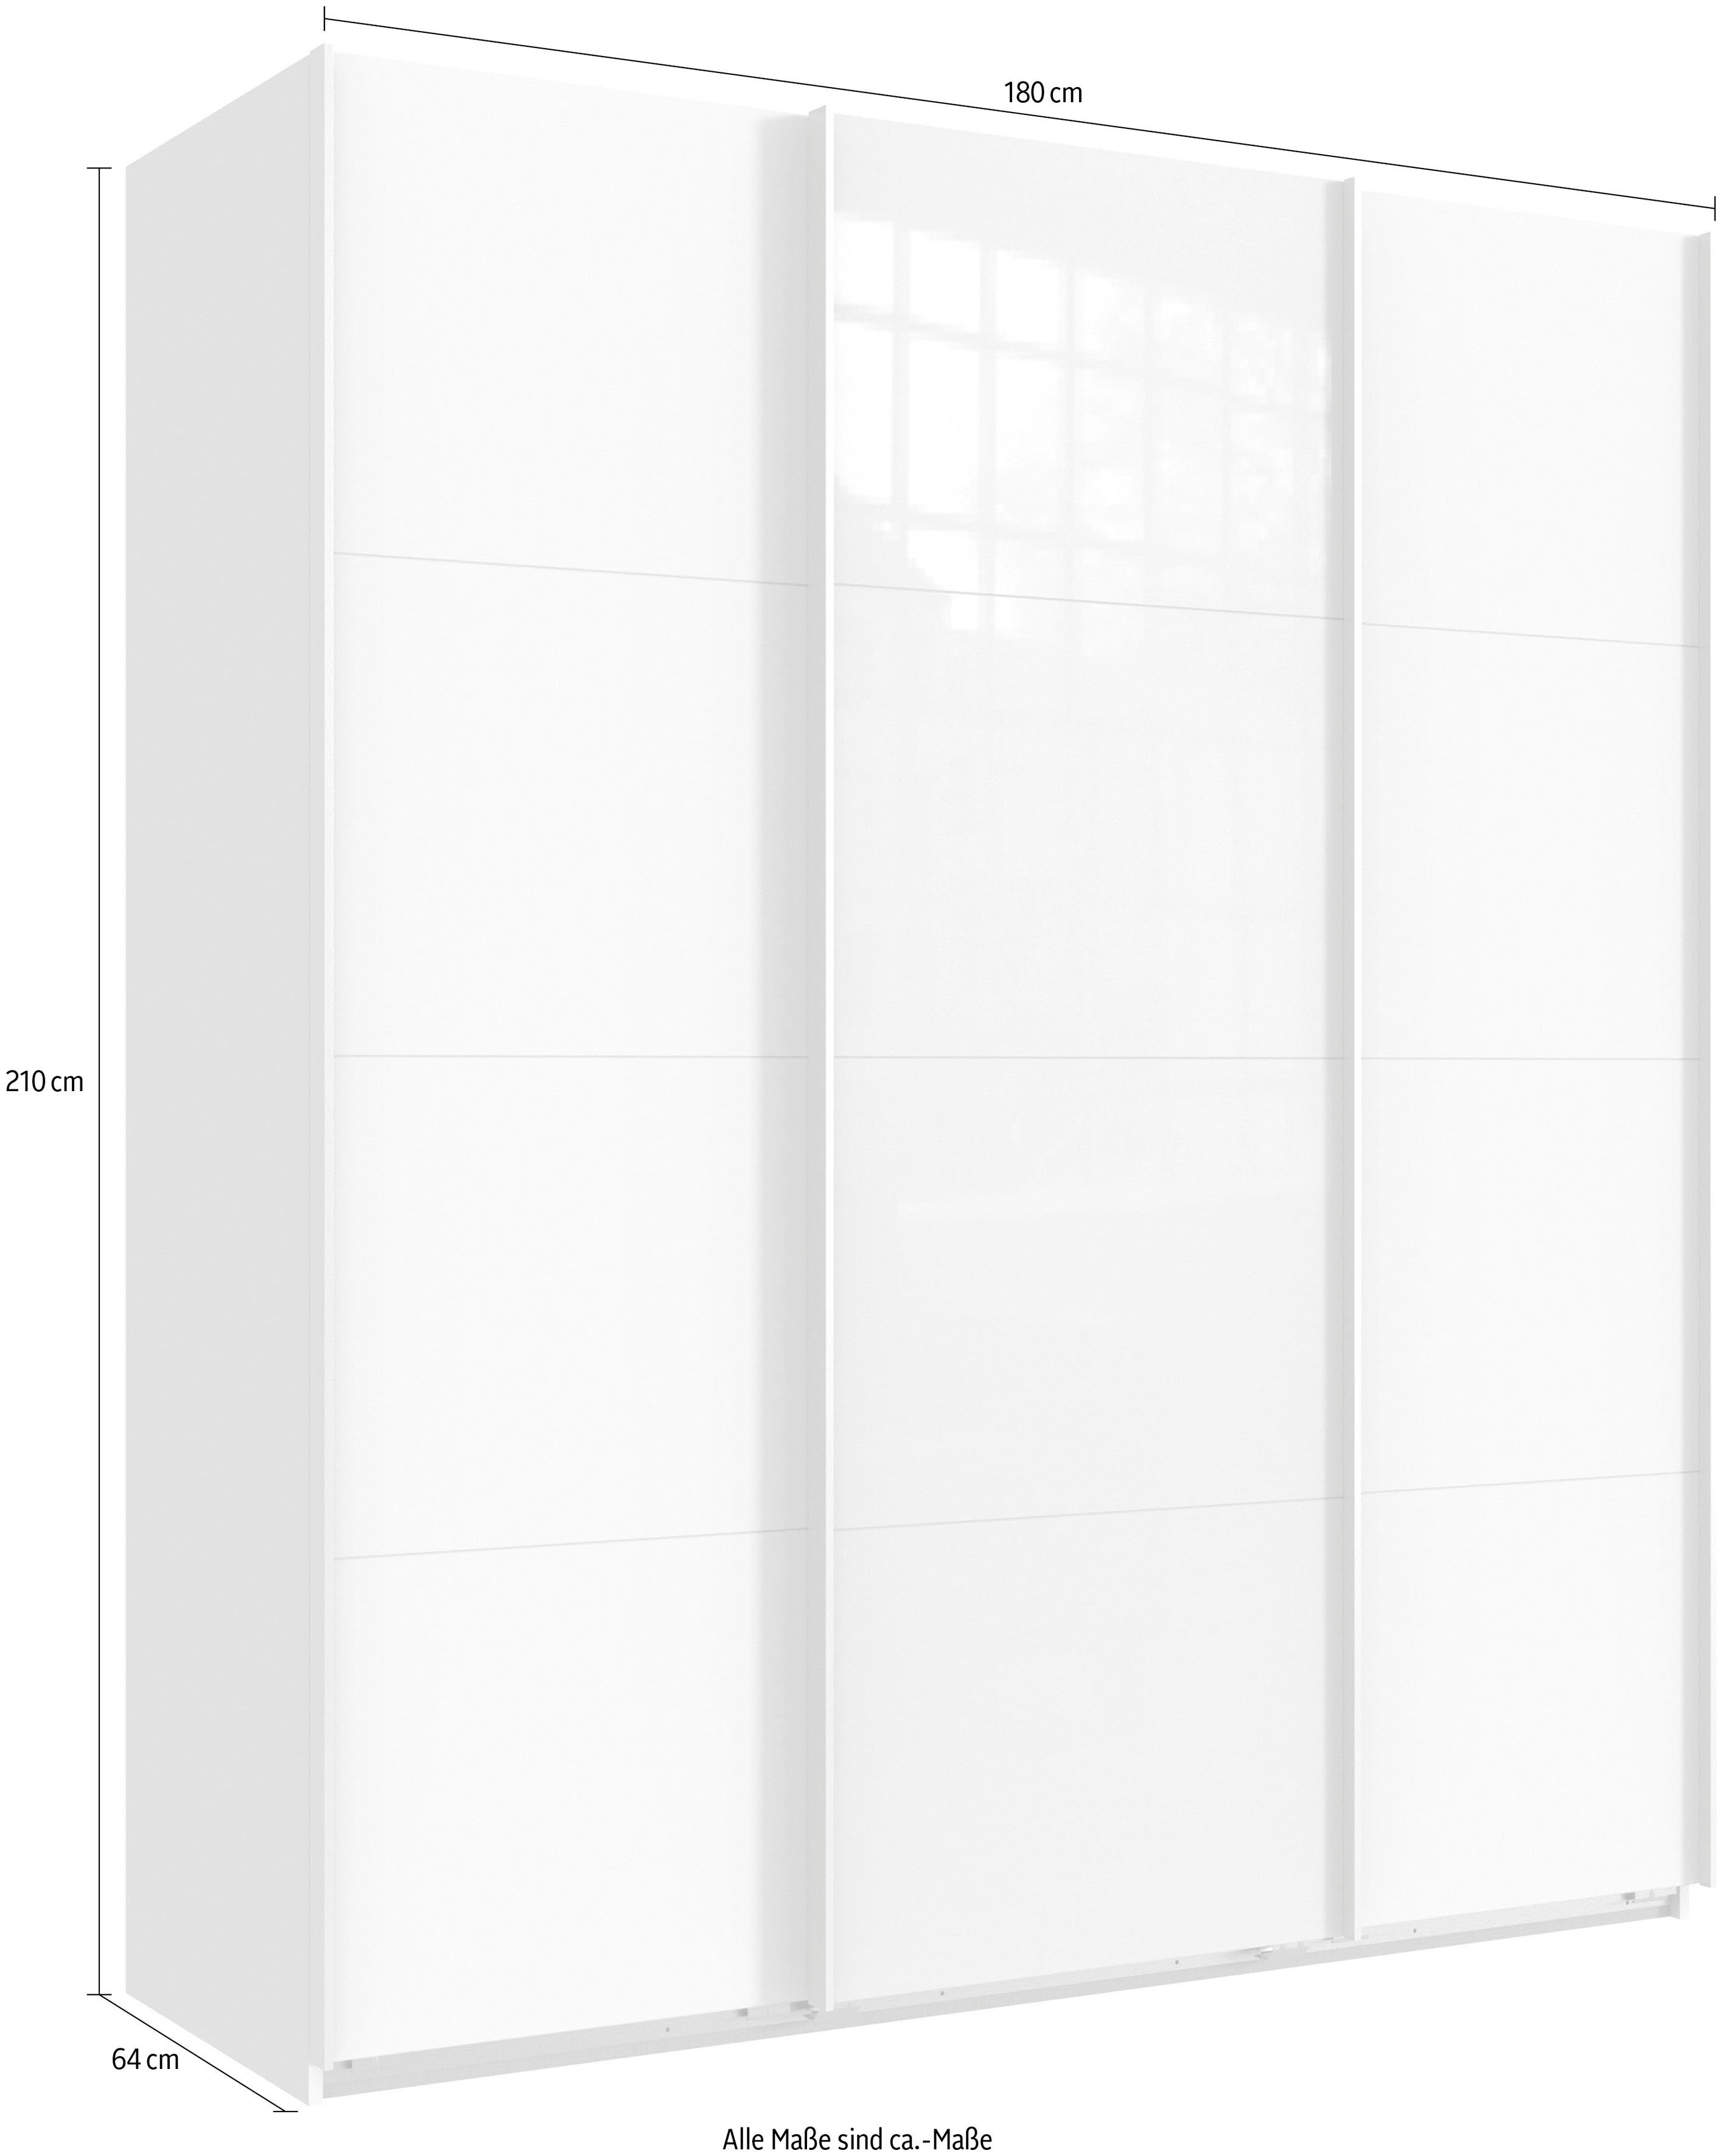 Norderstedt zusätzliche | Stoffboxen weiß Wimex INKLUSIVE Schwebetürenschrank Weiß 2 2 und Glas Einlegeböden Weiß/